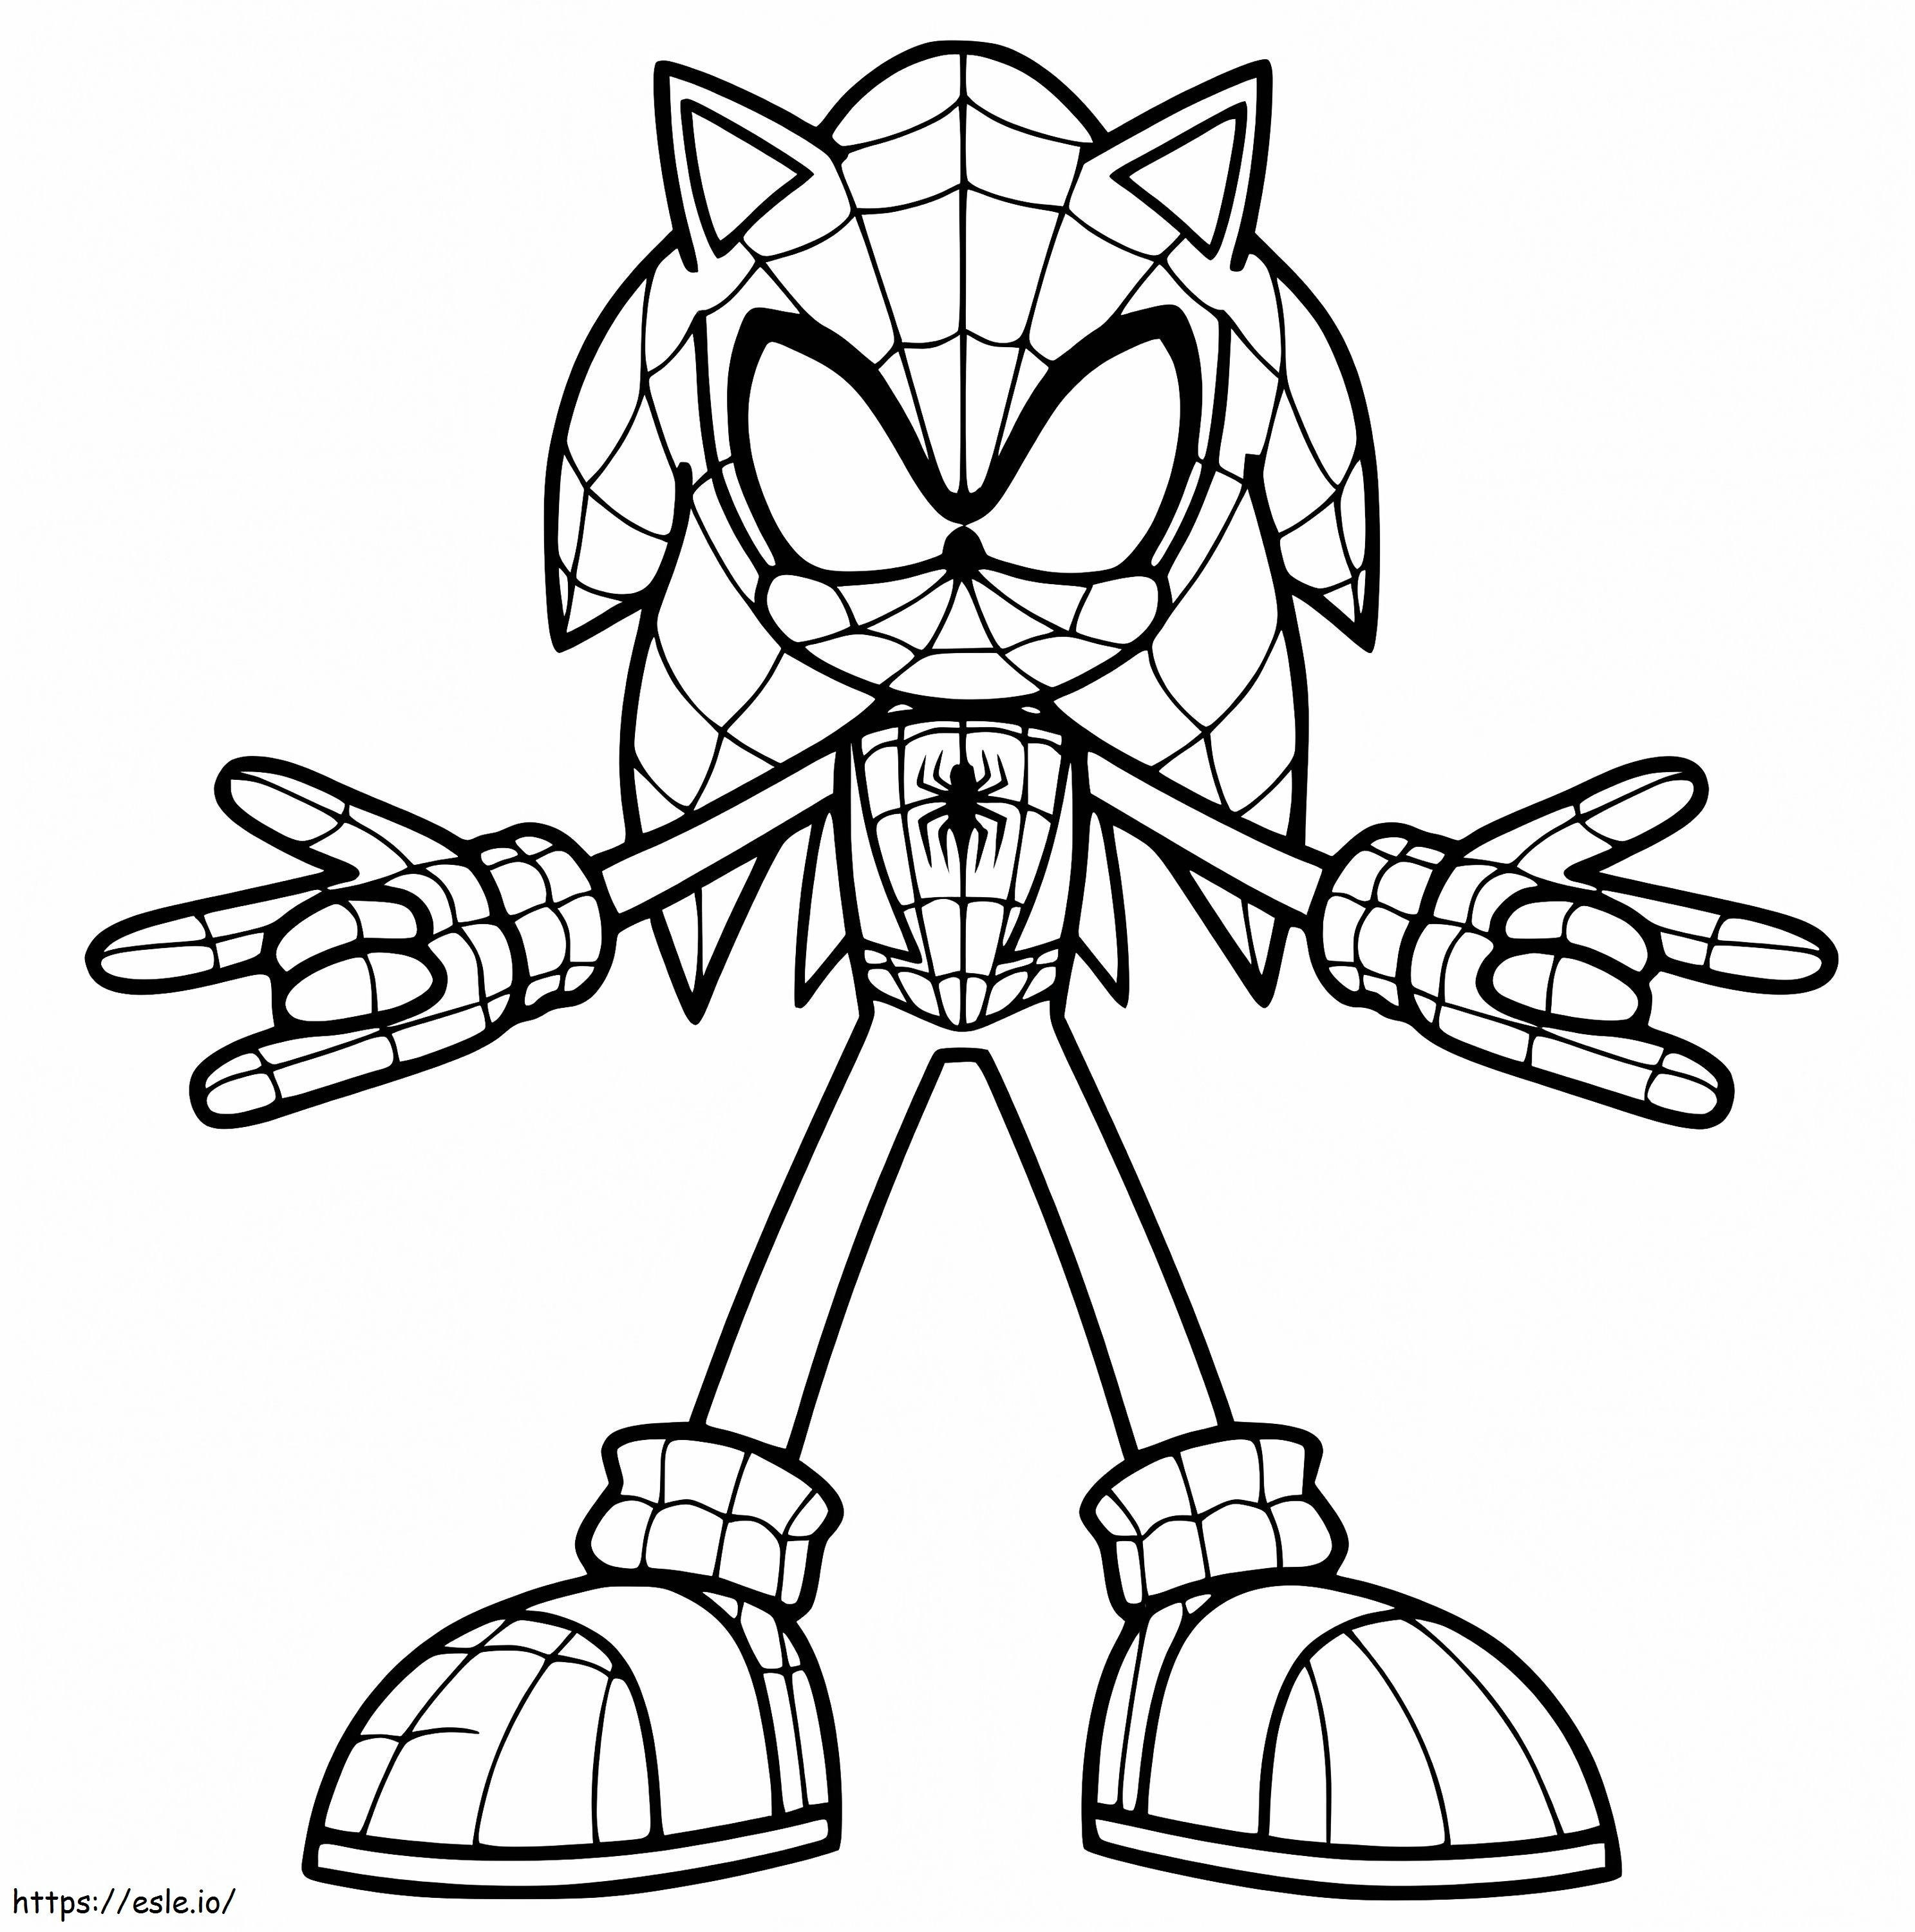 Örümcek Adam Sonic boyama